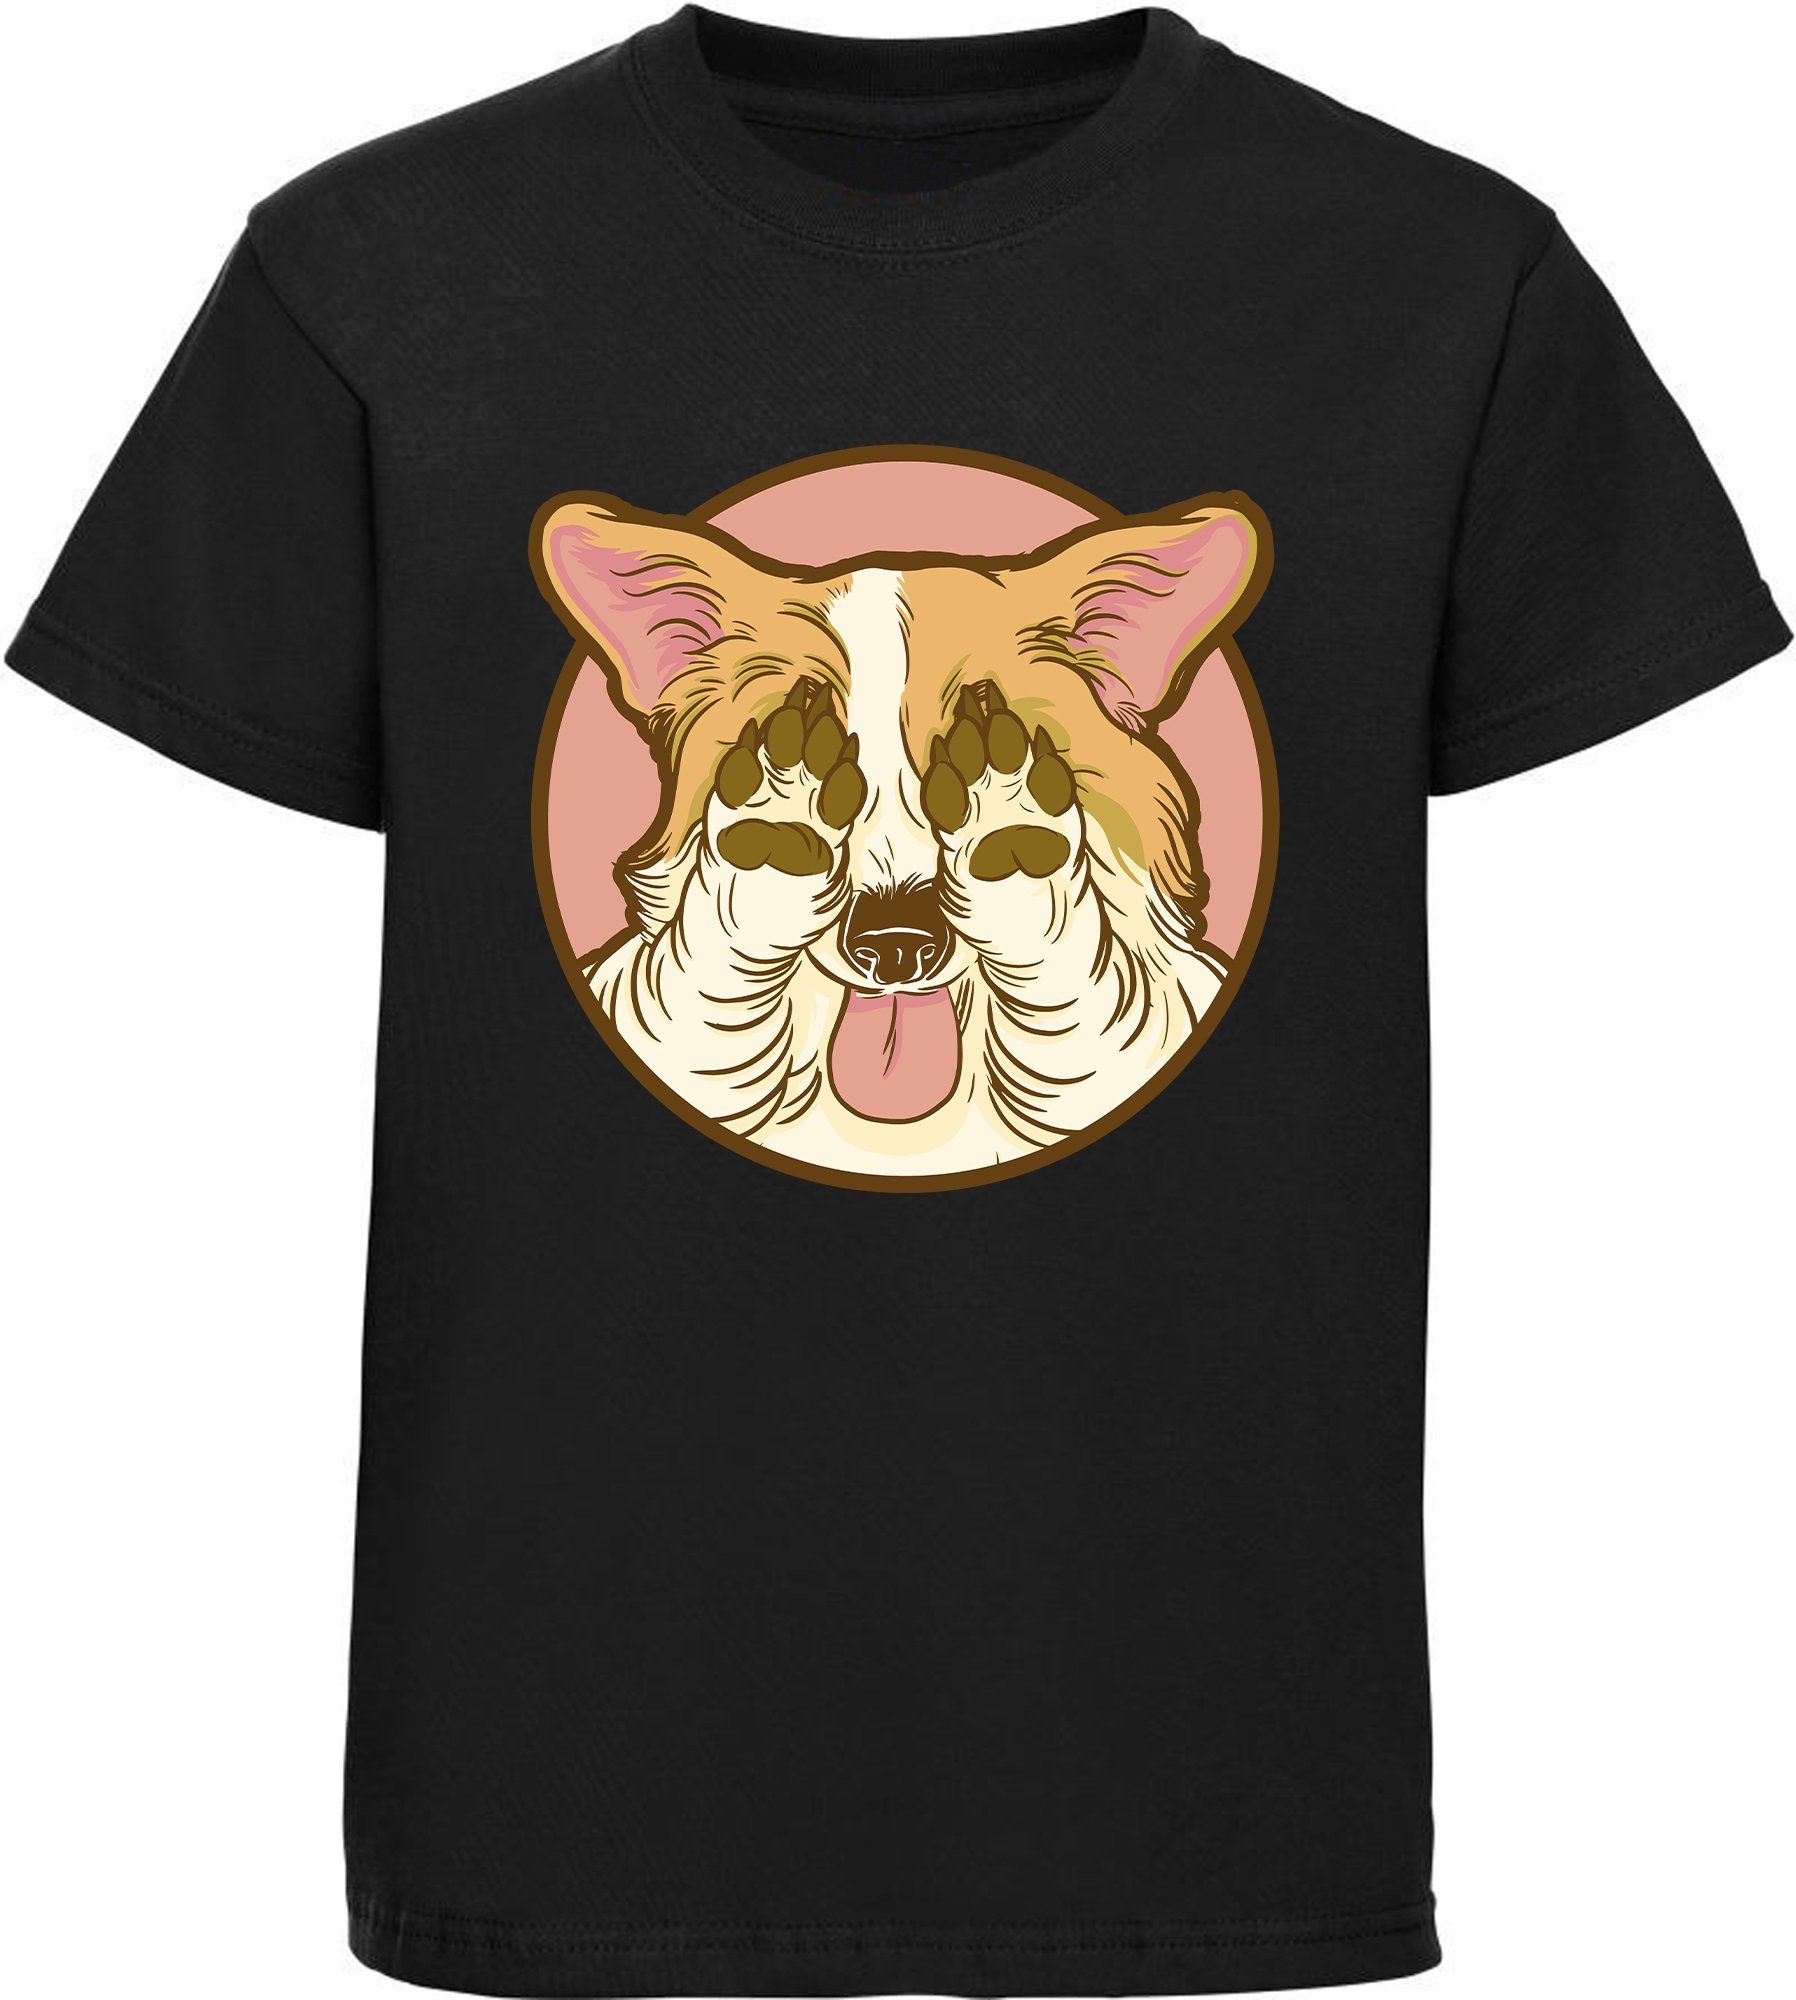 MyDesign24 Print-Shirt bedrucktes Kinder Hunde T-Shirt - Corgi der seine Augen zu hält Baumwollshirt mit Aufdruck, i226 schwarz | T-Shirts